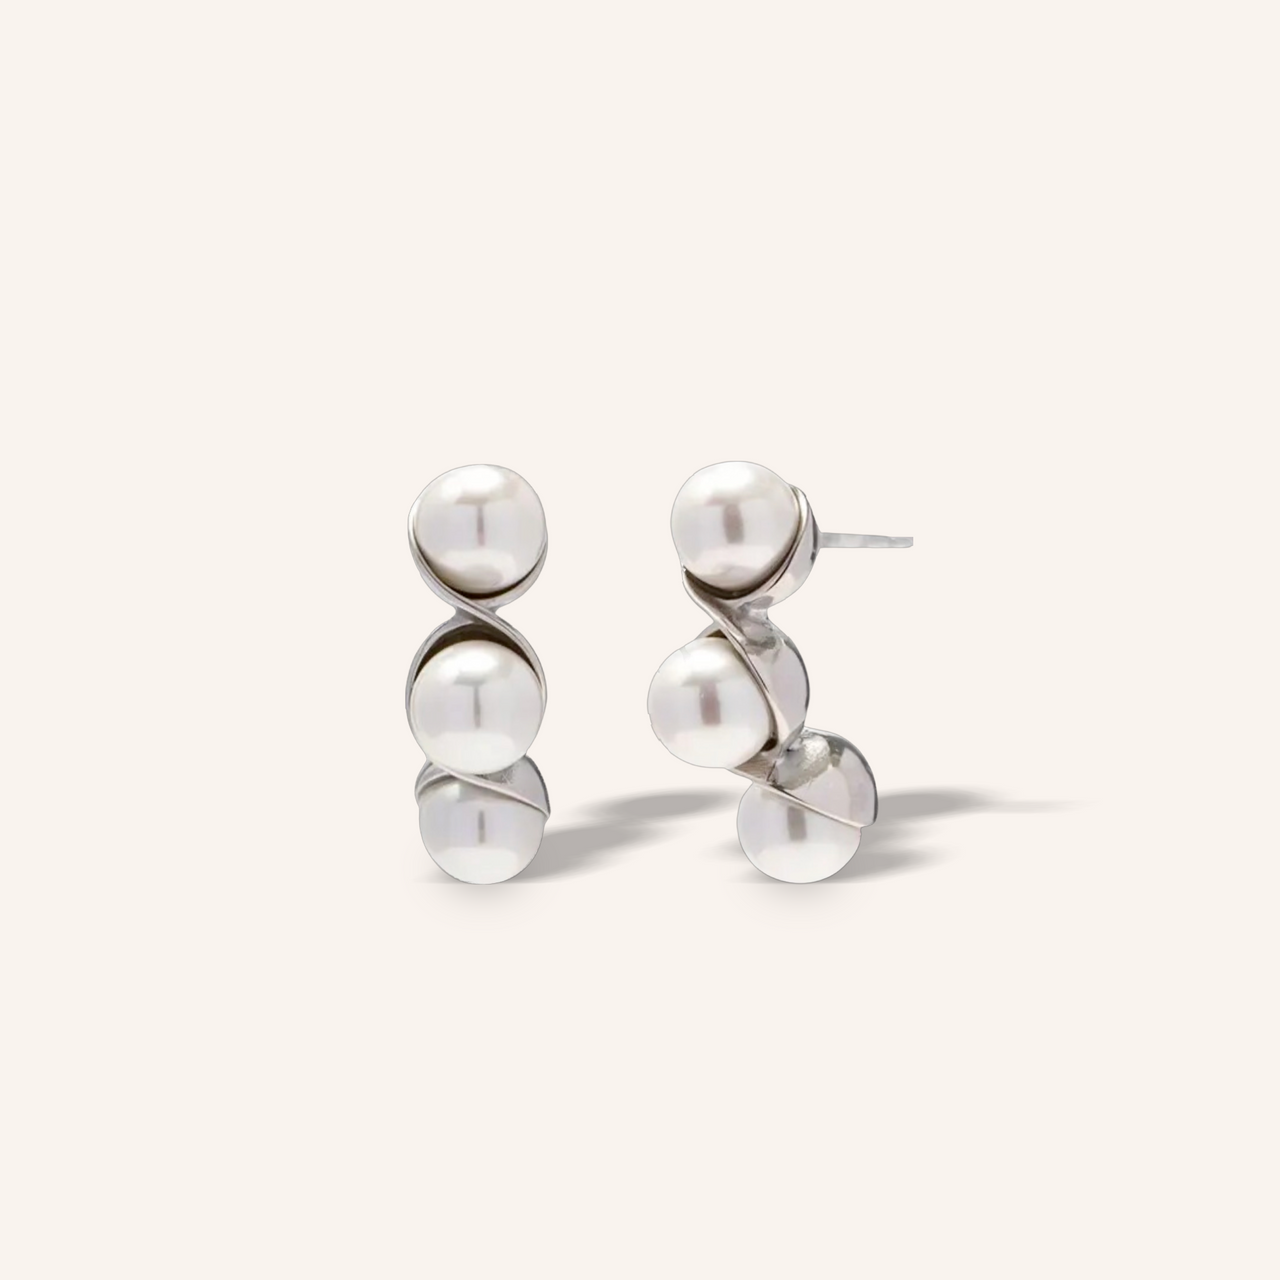 Madison silver earrings